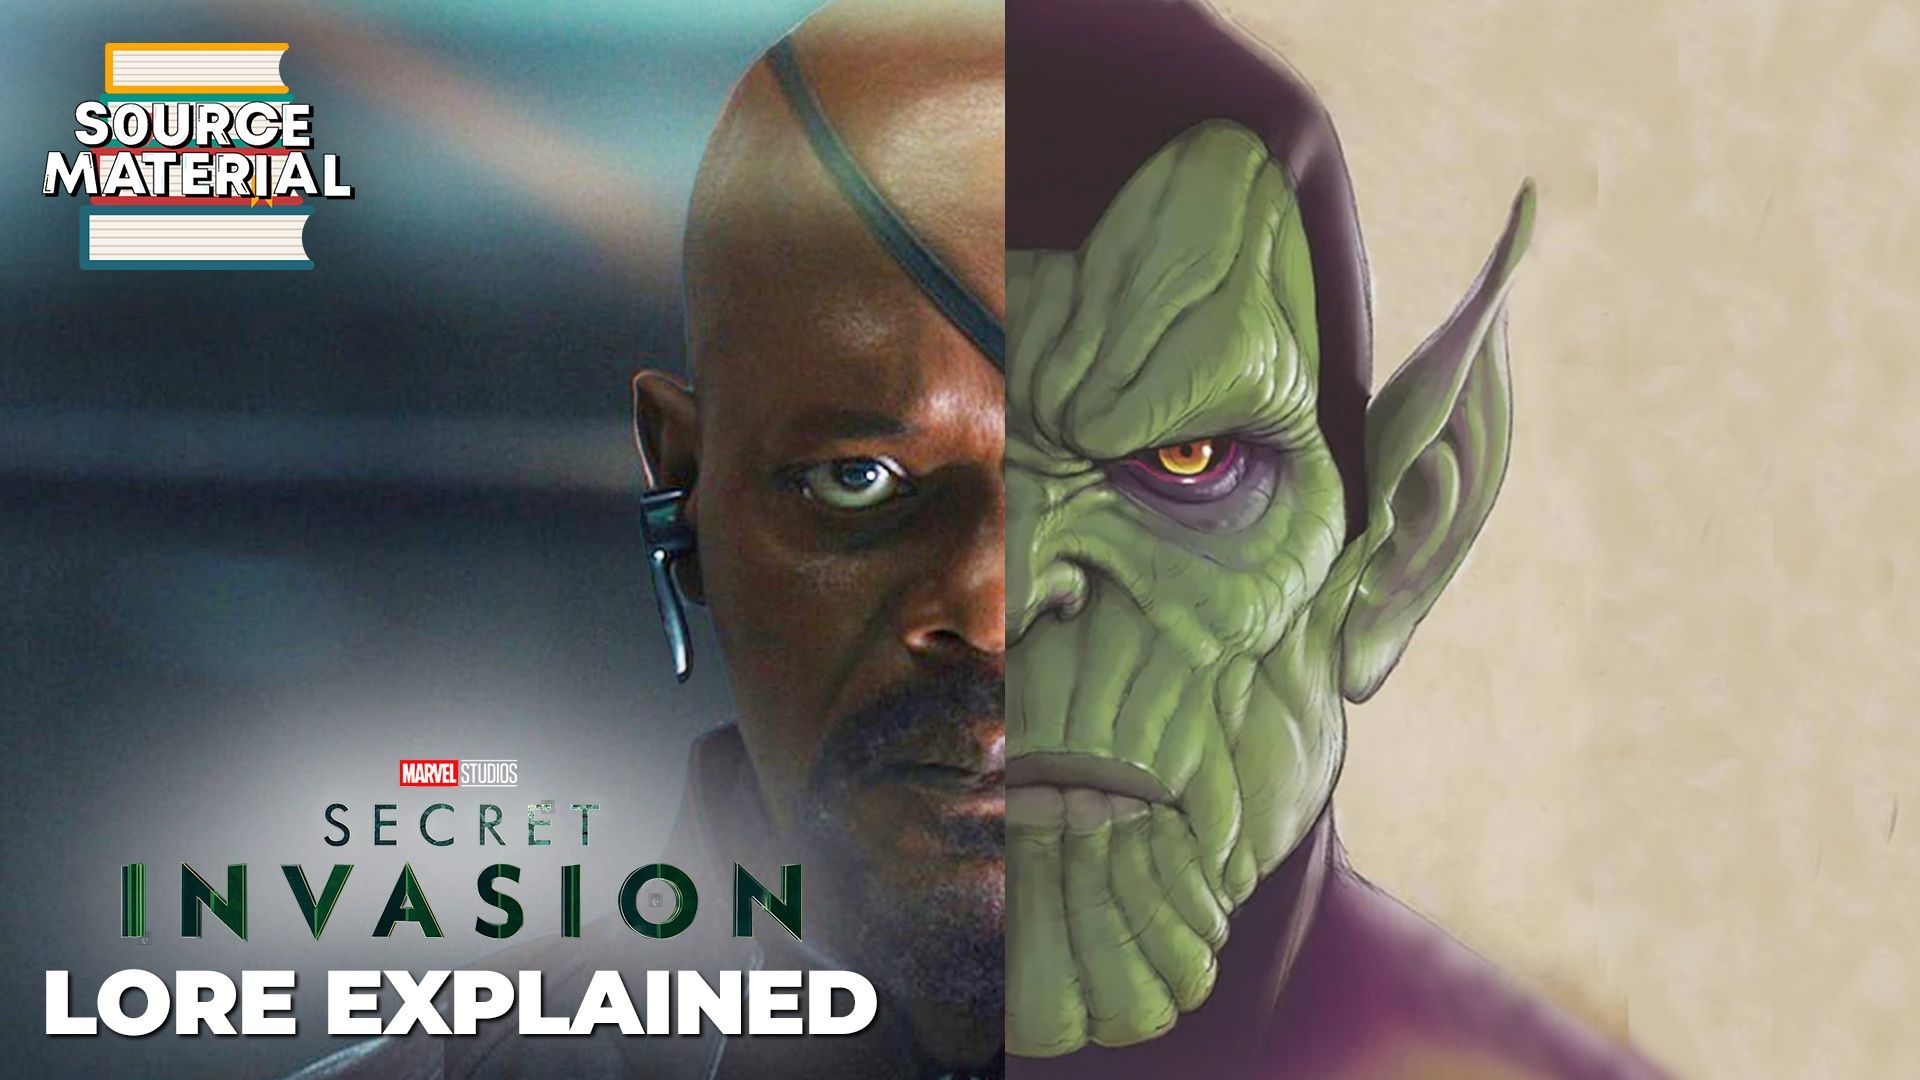 Marvel Studios' 'Secret Invasion' AI Intro Controversy, Explained